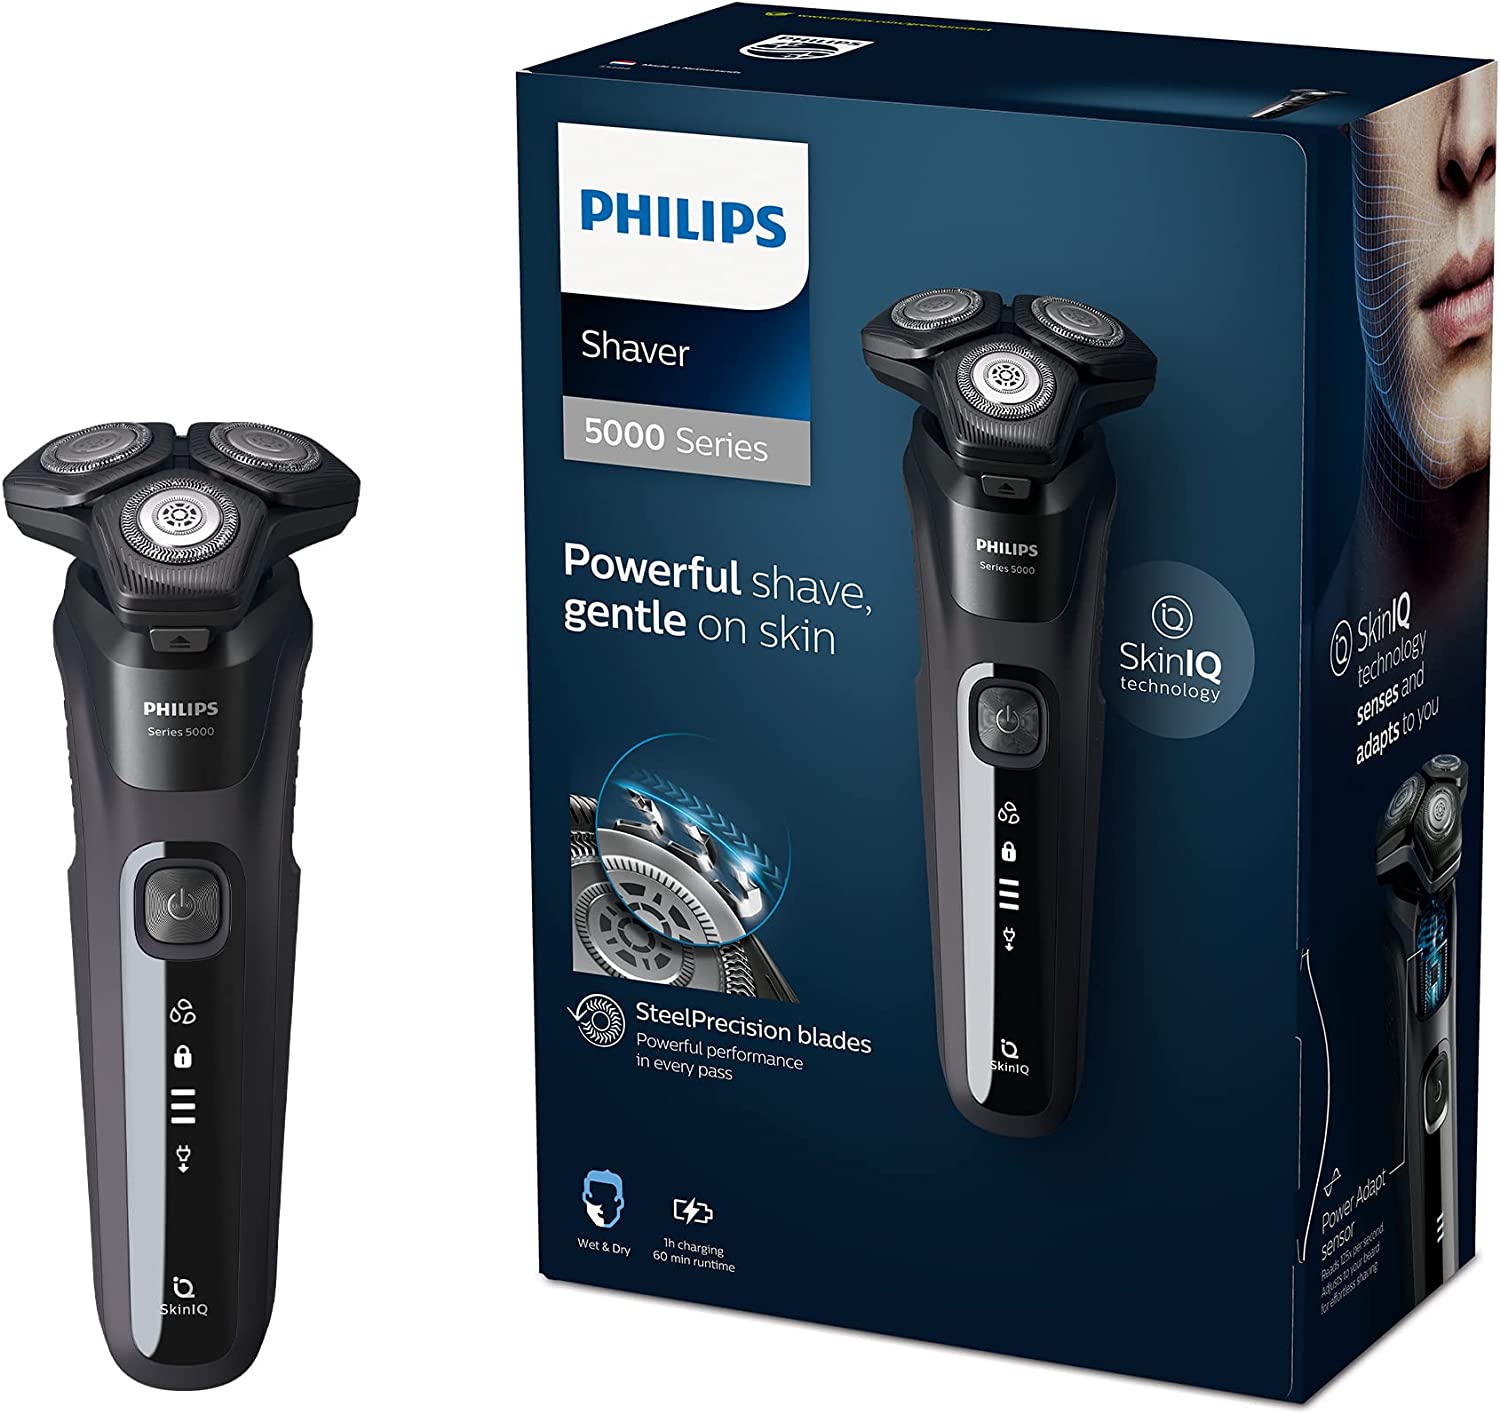 Philips Shaver Series 5000 vs. Philips Shaver Series 3000 vs. Philips Shaver Series 9000 vs. Philips Shaver Series 7000